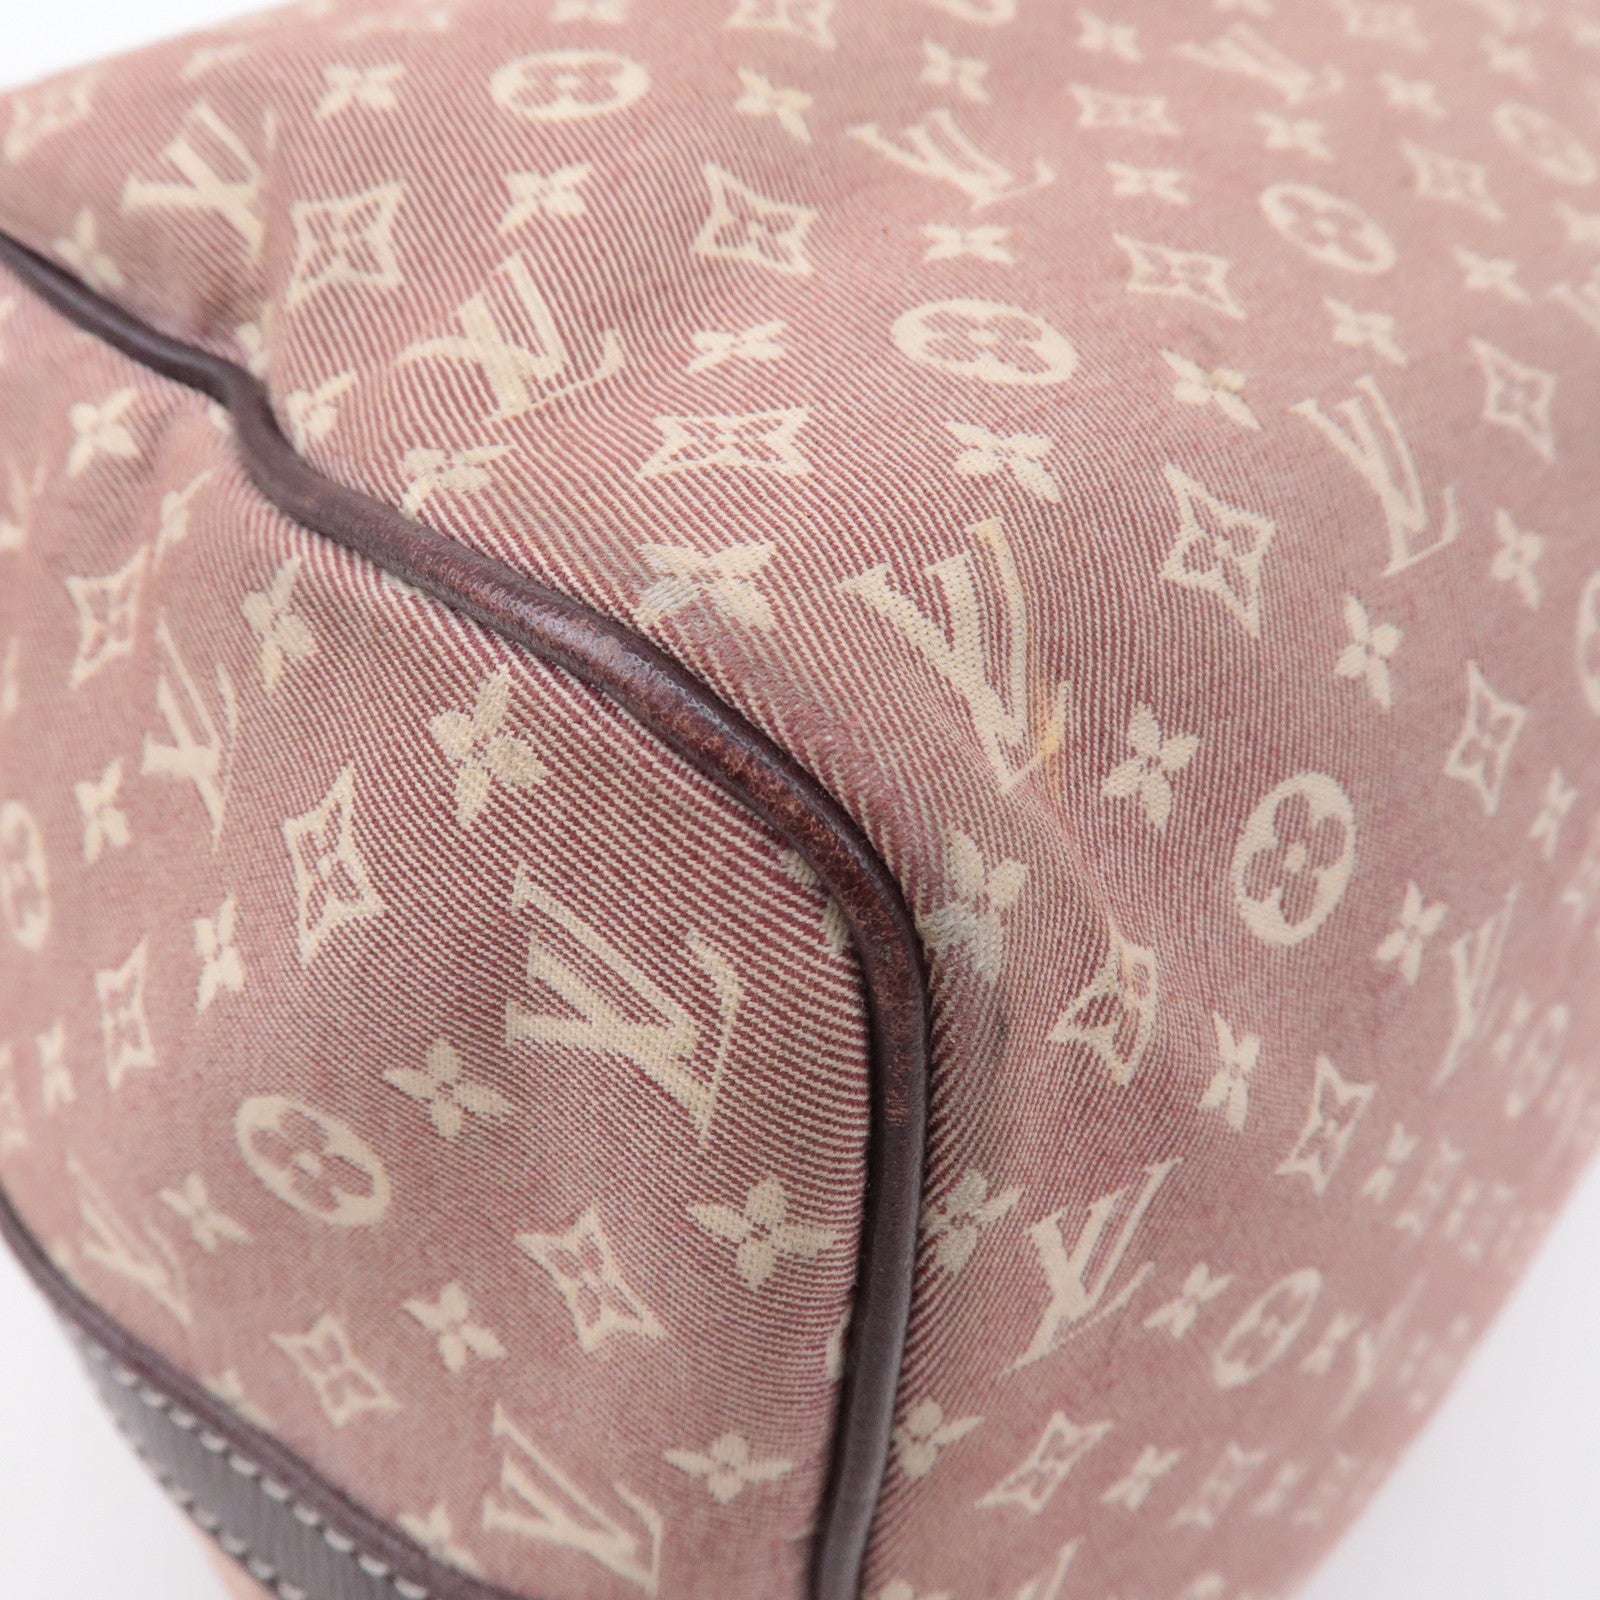 Louis Vuitton Sepia Monogram Idylle Speedy Bandouliere 30